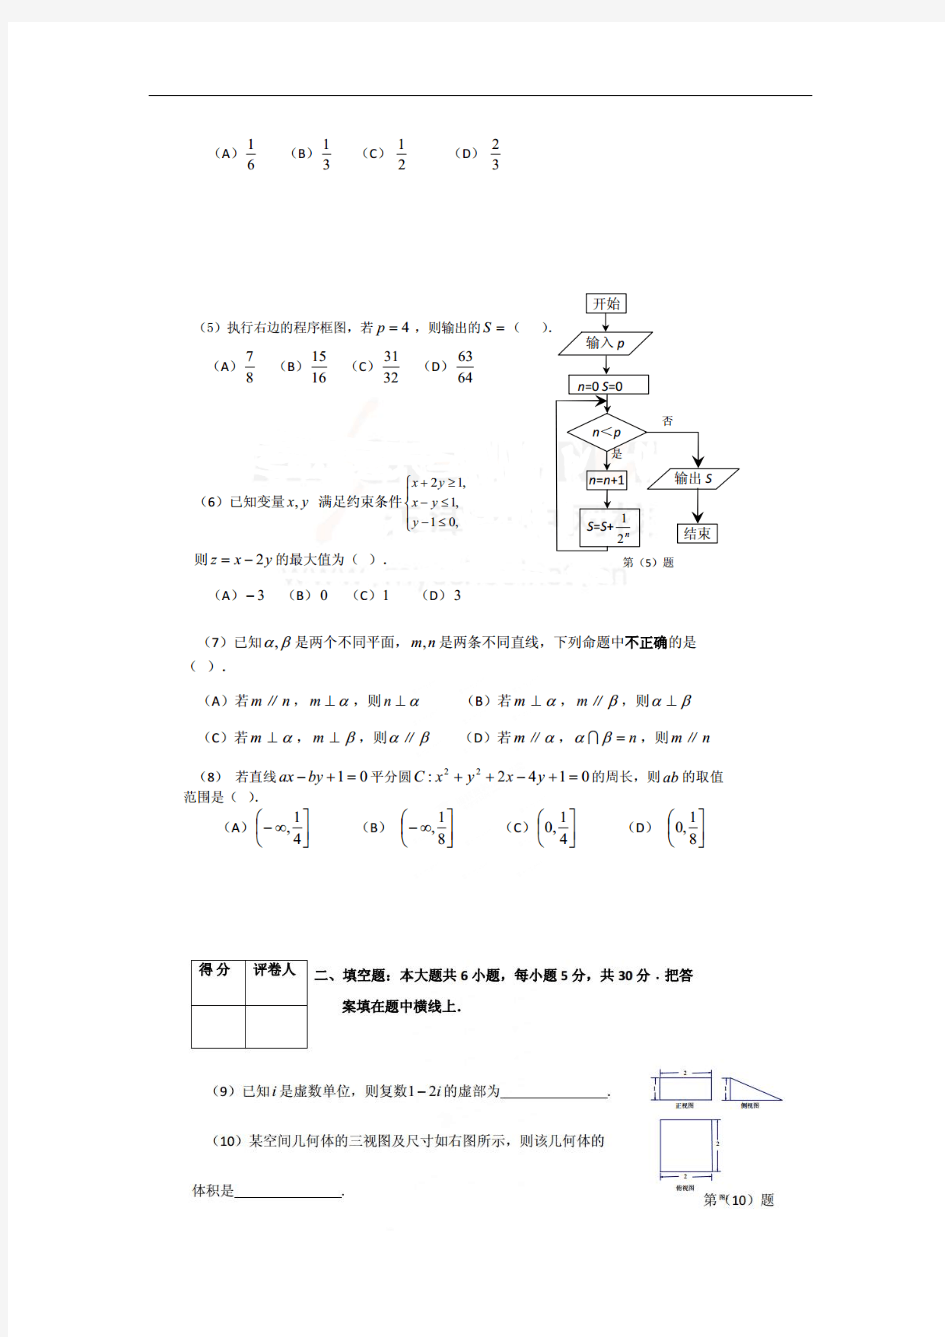 2014天津一中高考名师圈题模拟考试数学文试题及答案